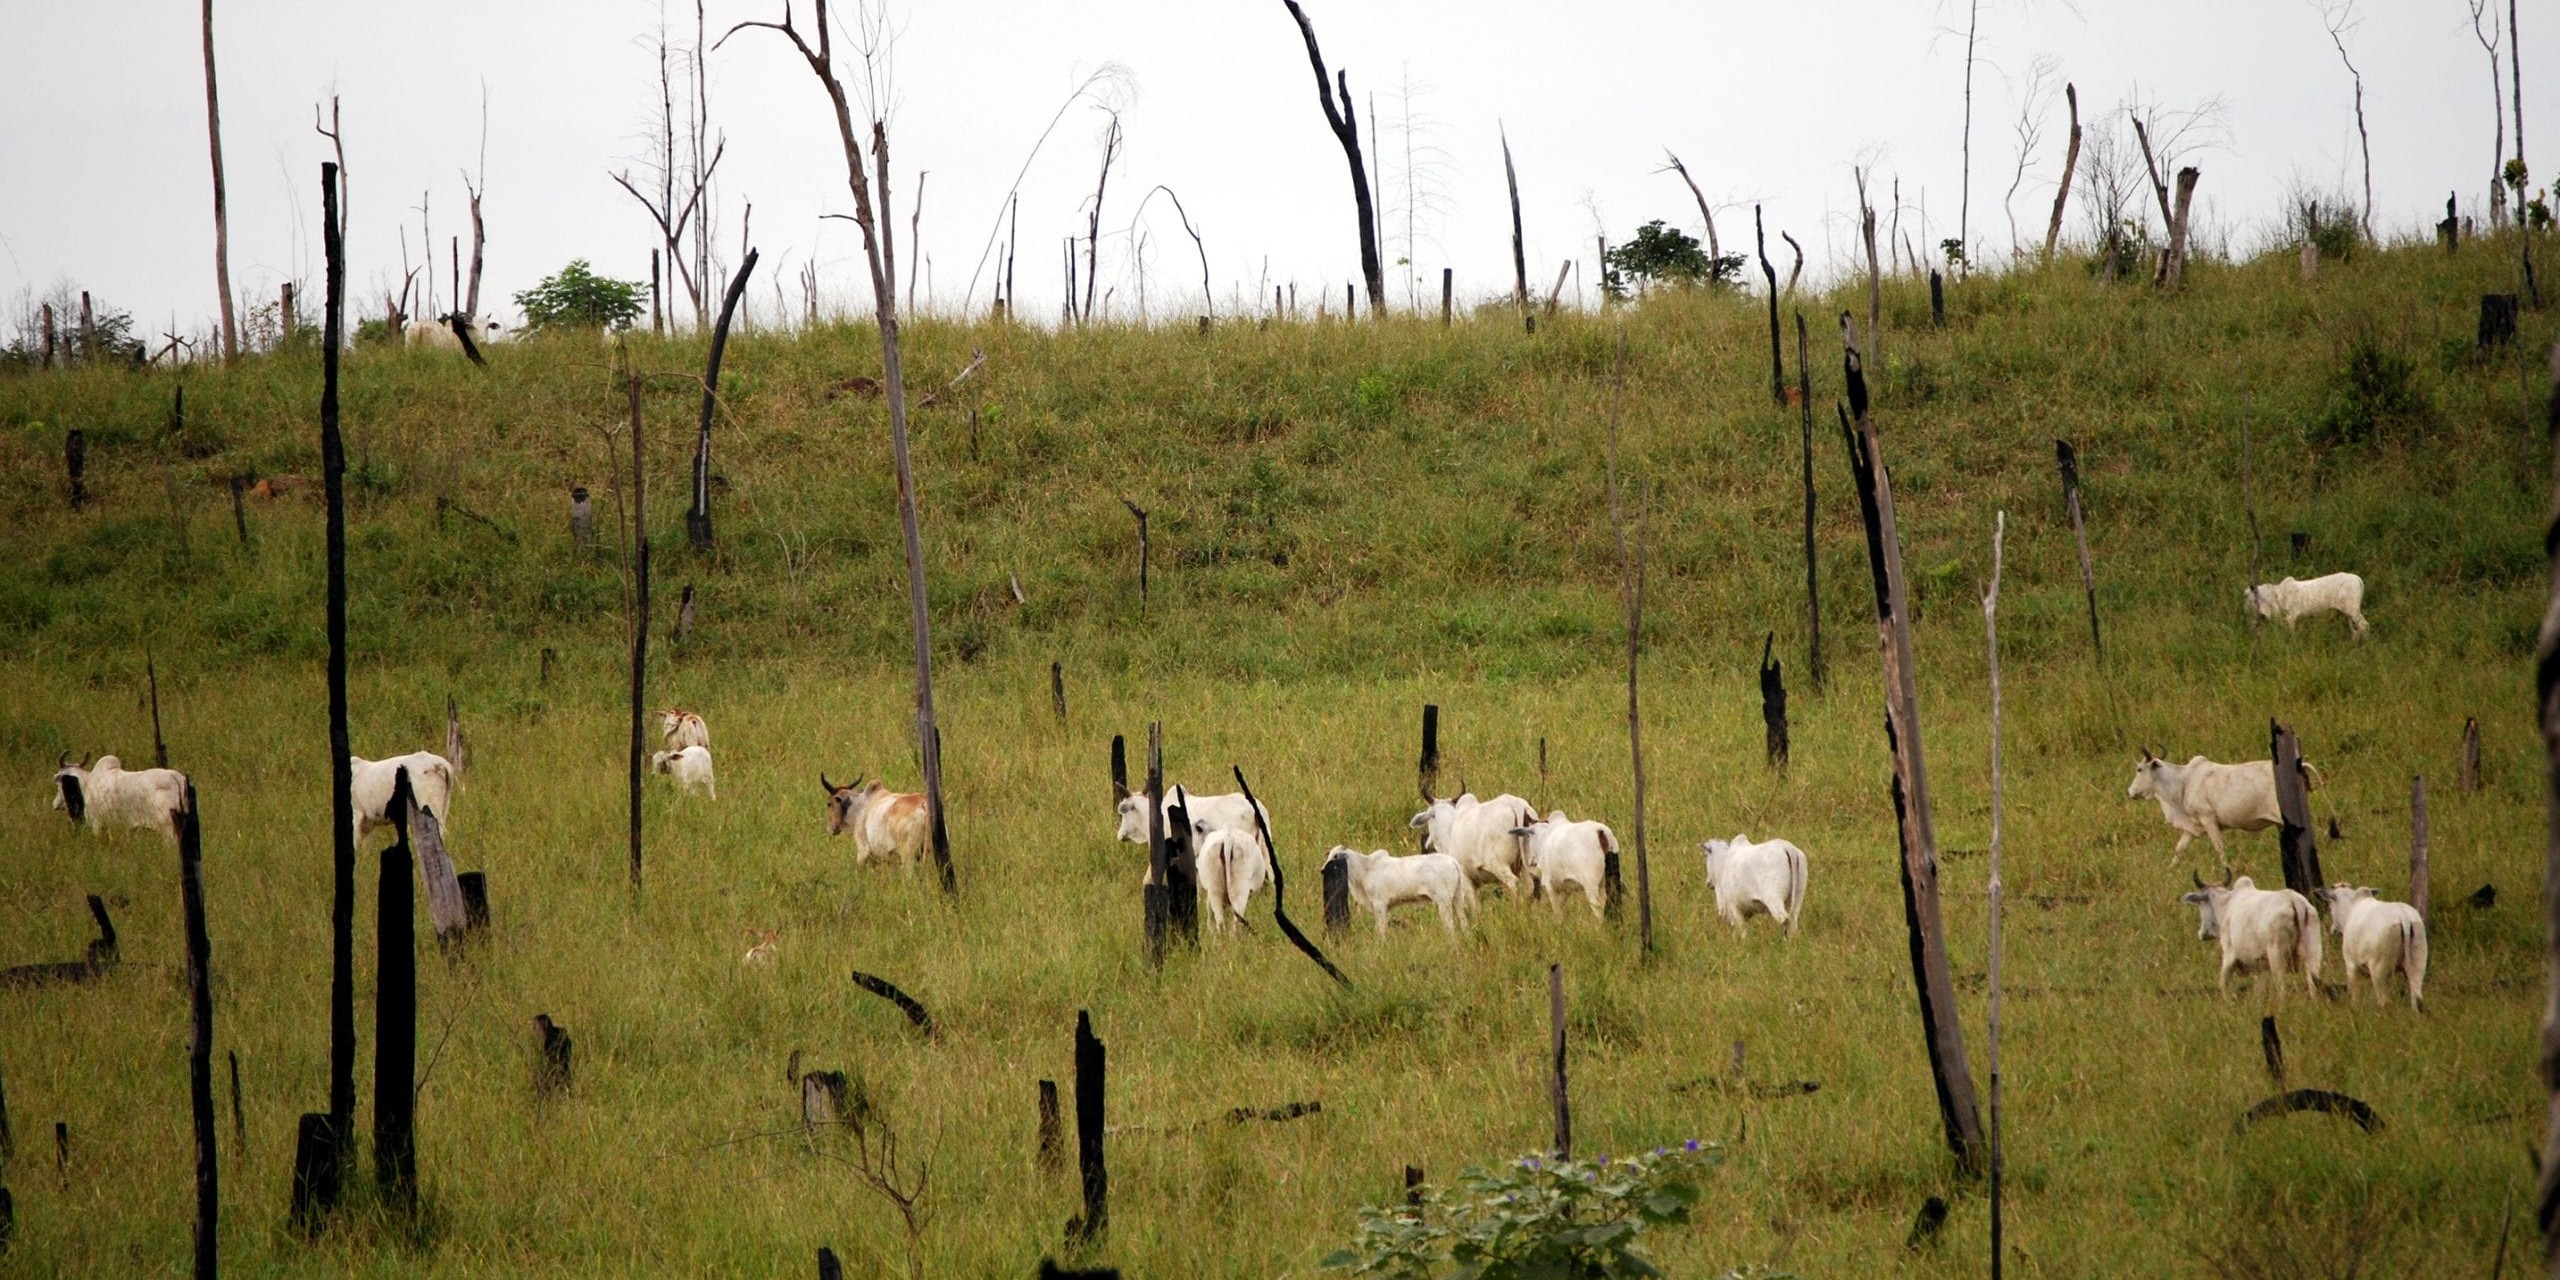 cattle_amazon_deforestation